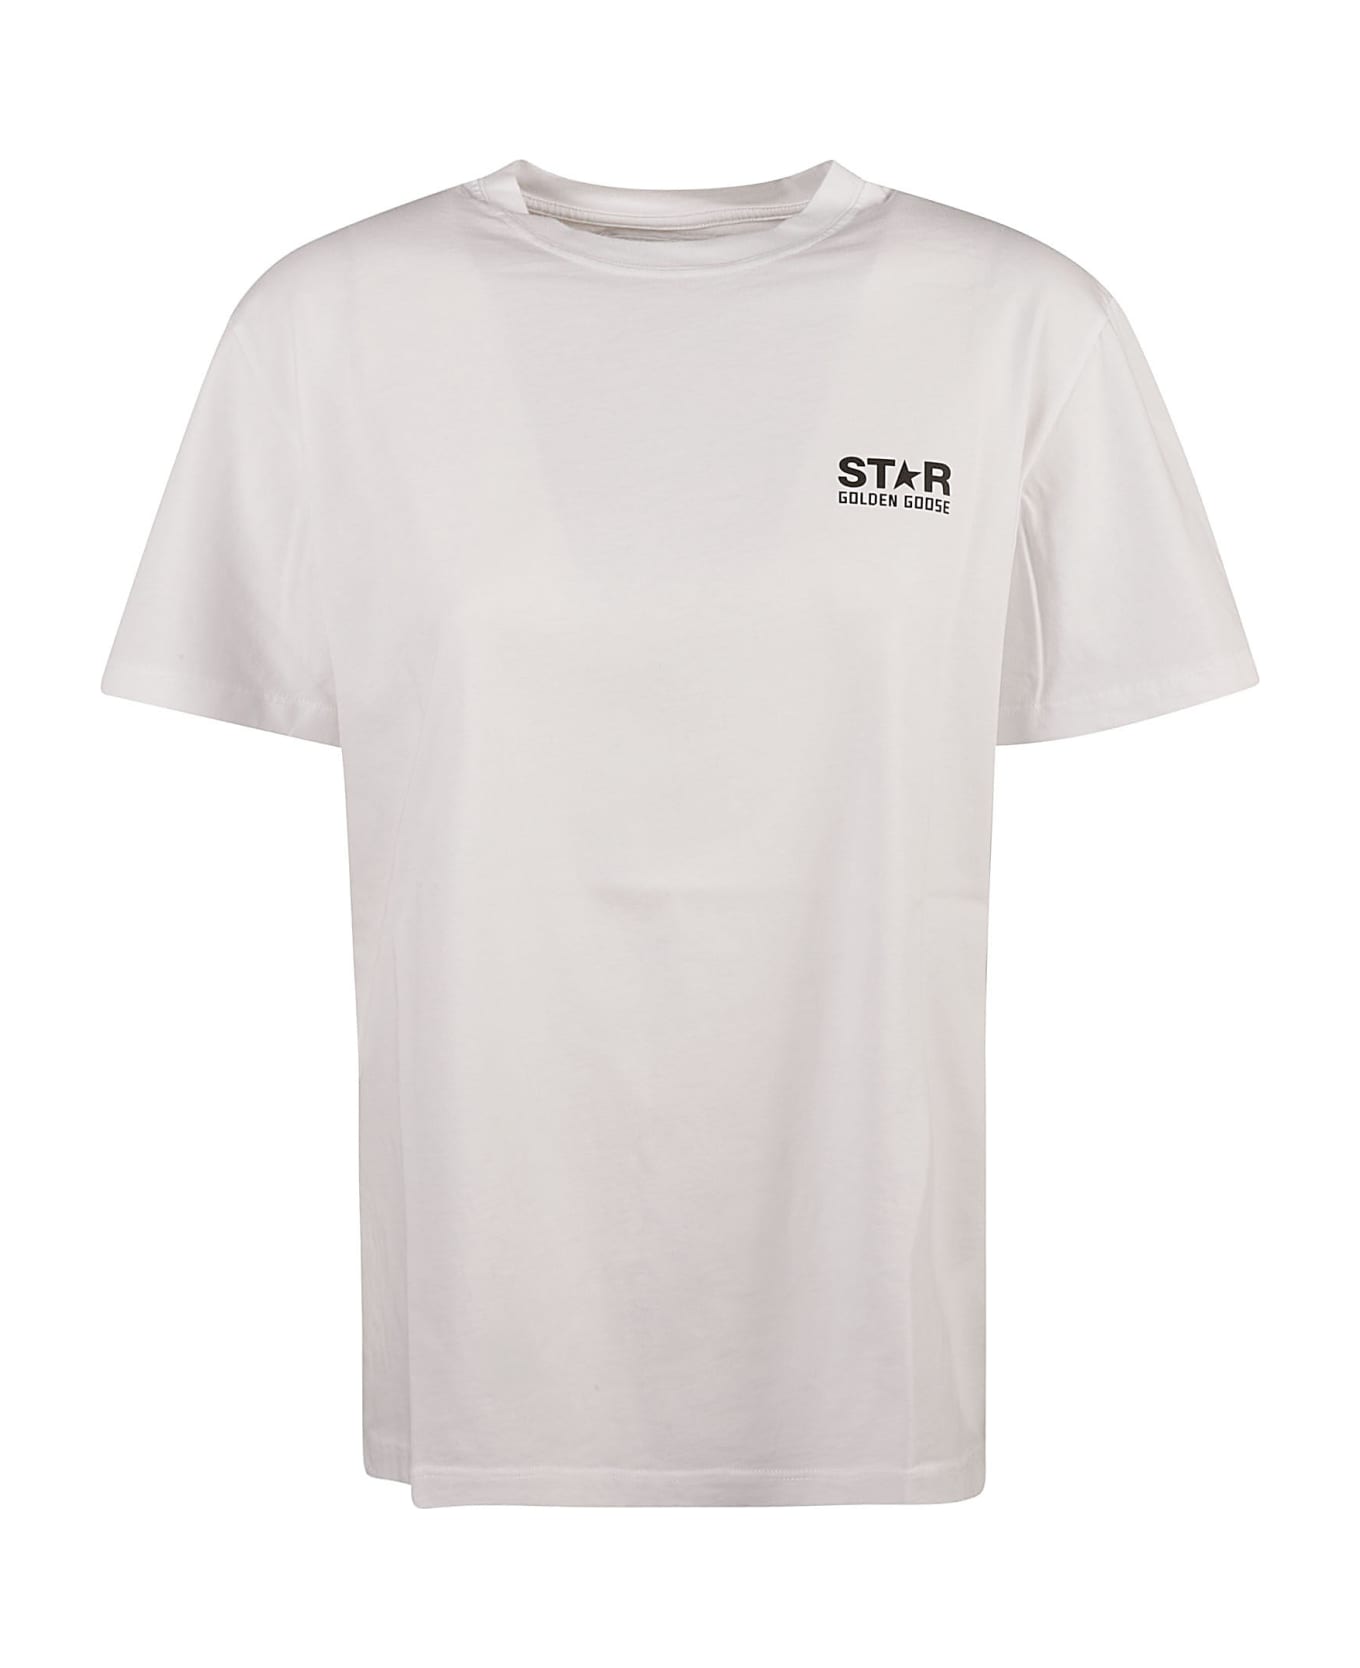 Golden Goose Star T-shirt - White Tシャツ